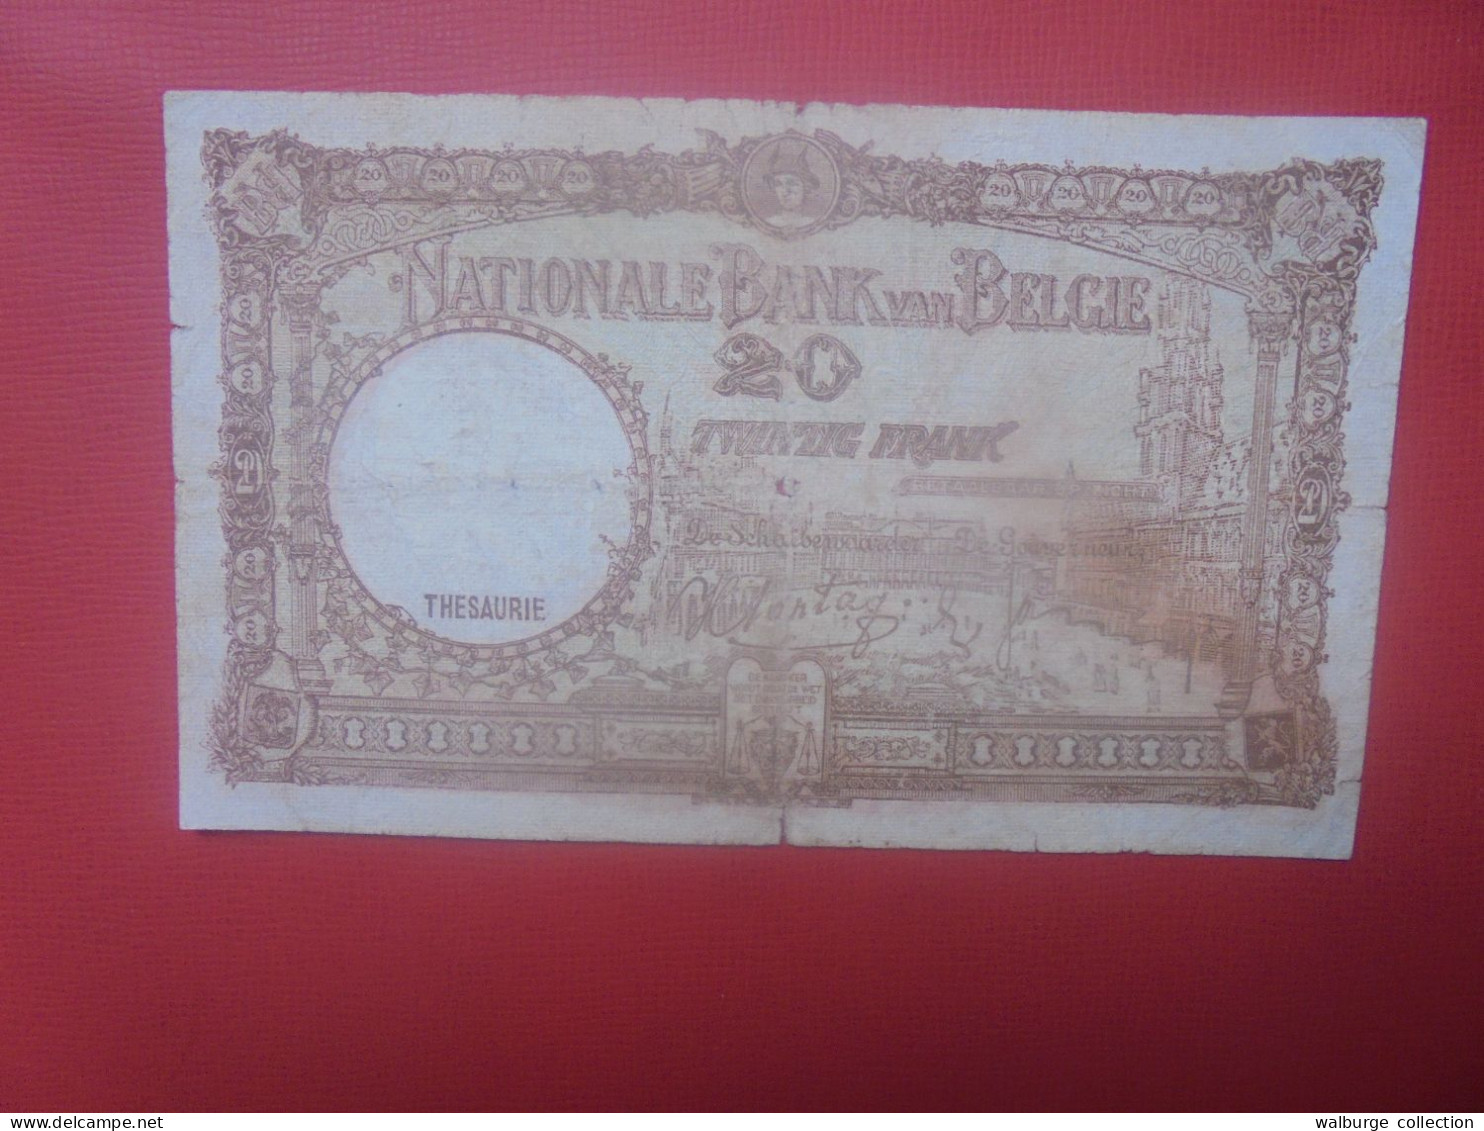 BELGIQUE 20 Francs 10-2-1940 Circuler (B.18) - 20 Francs